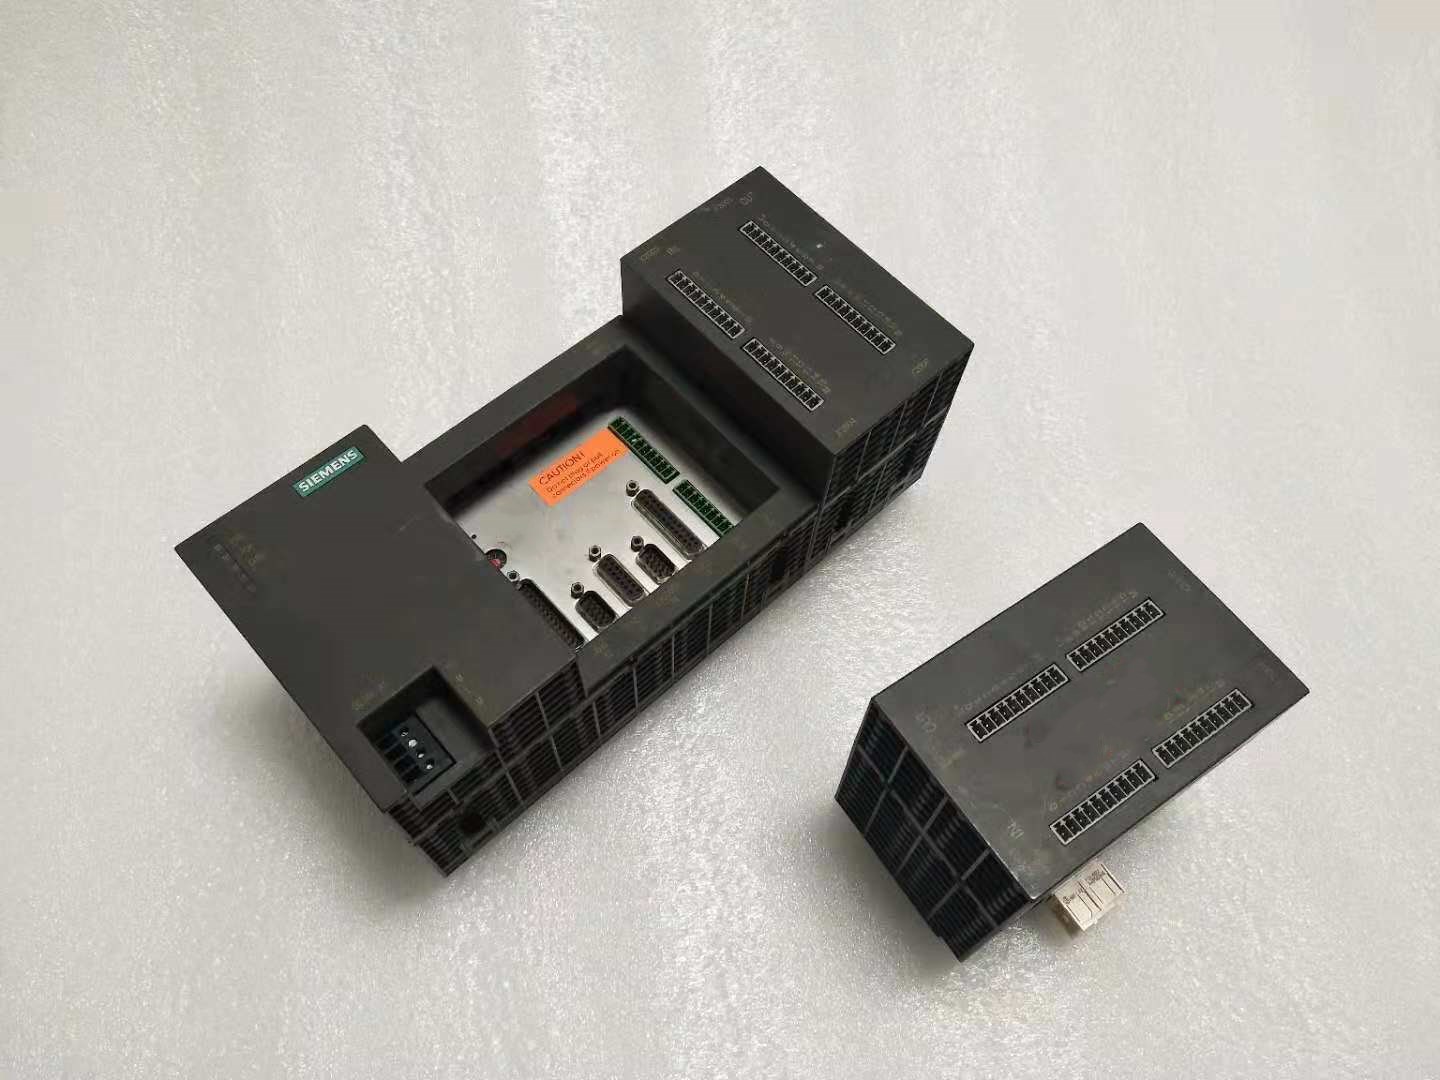 西門子802S數控系統 專業西門子二手備件銷售  質保